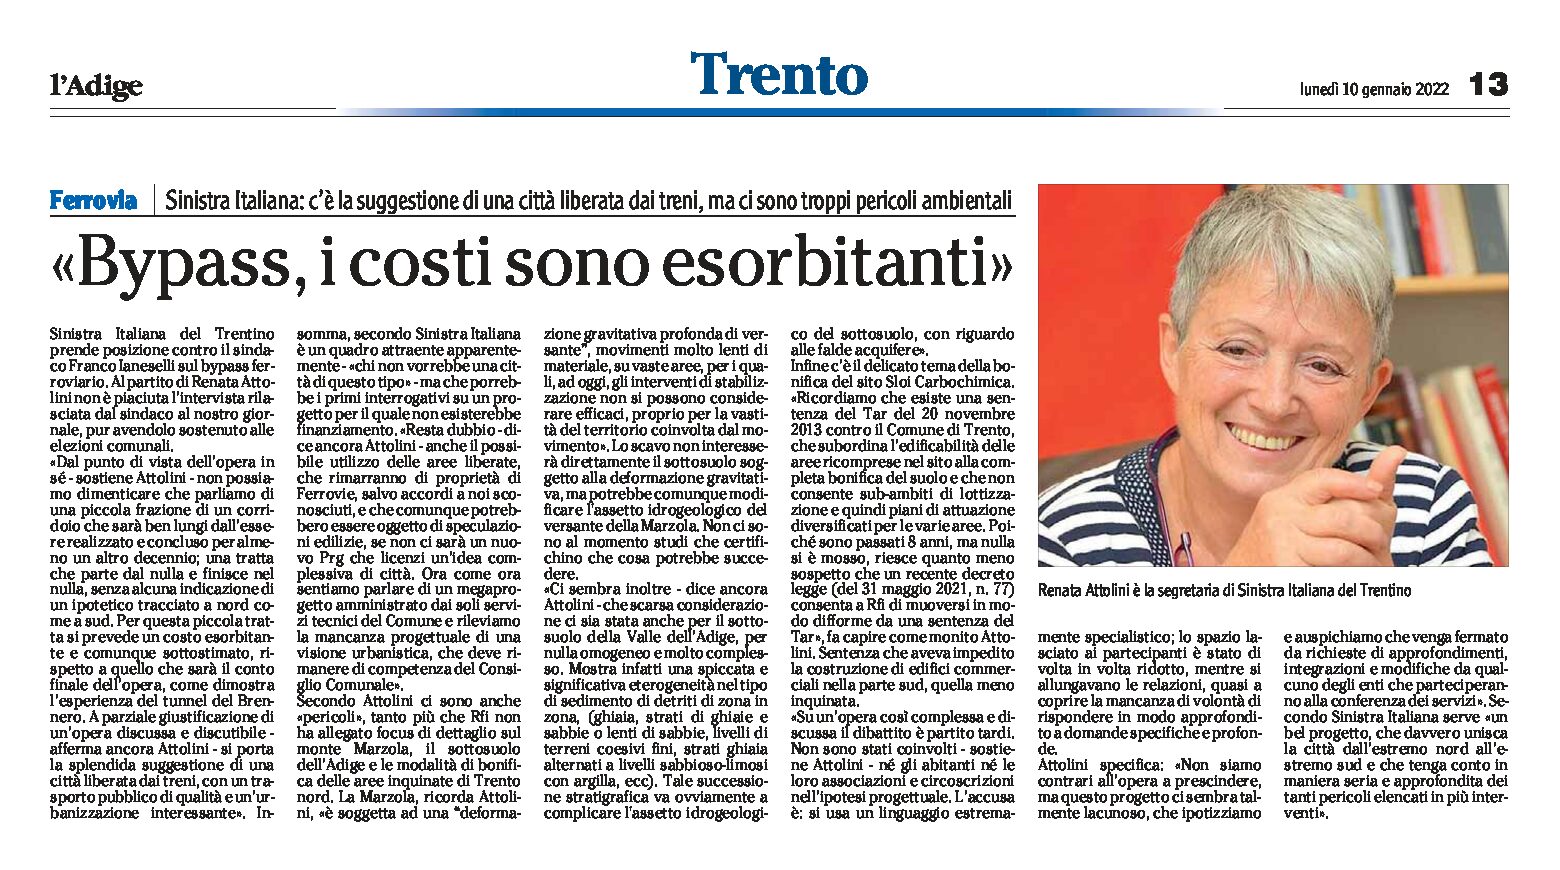 Trento, bypass: i costi sono esorbitanti. Intervista a Renata Attolini